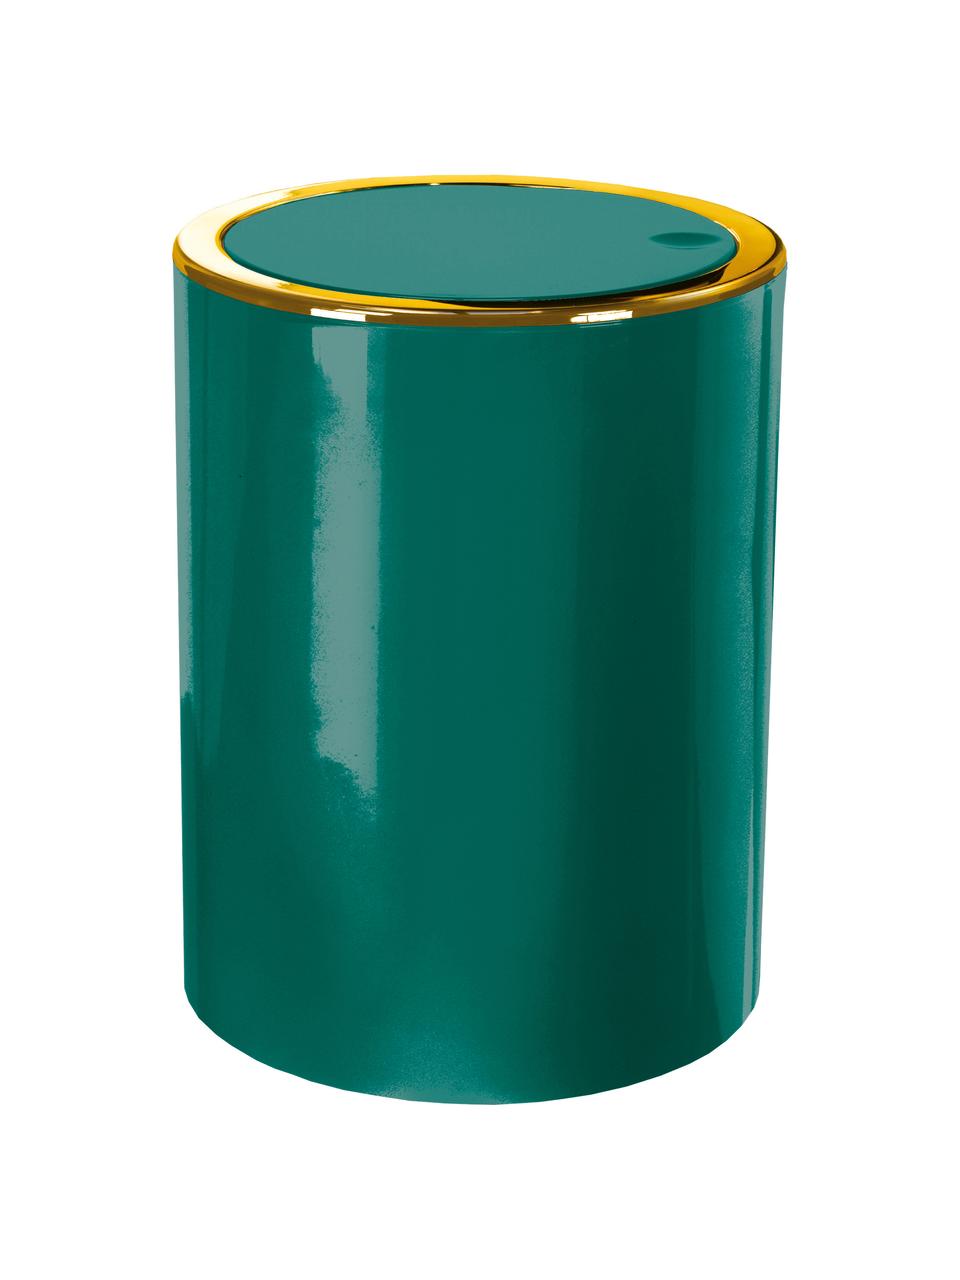 Pattumiera con coperchio basculante Golden Clap, Materiale sintetico, Verde smeraldo, Ø 19 x Alt. 25 cm